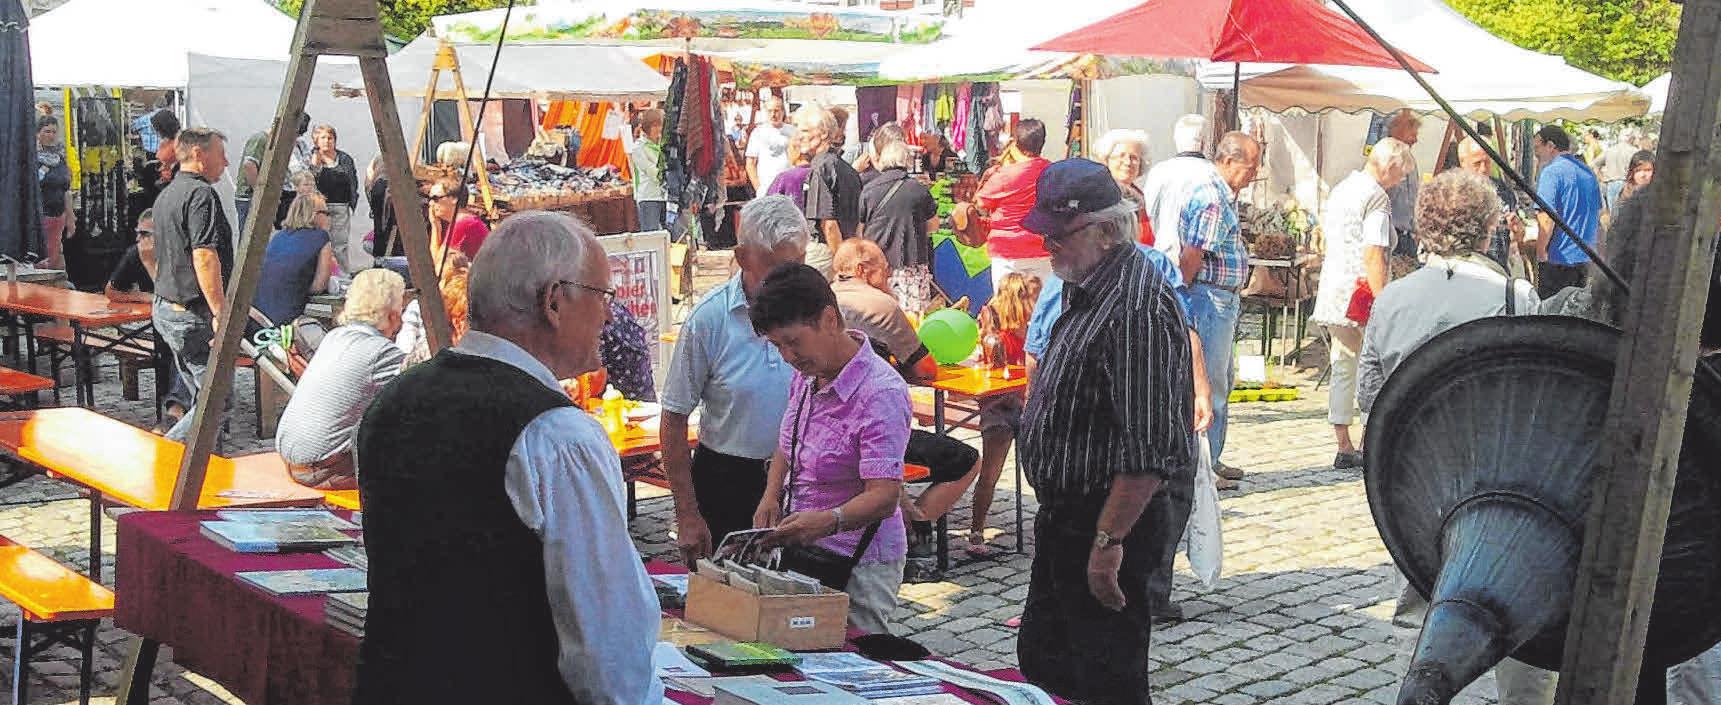 Geschichts- und Heimatverein Eglofs in Argenbühl: Buntes Treiben auf dem Kunstmarkt in Eglofs-2